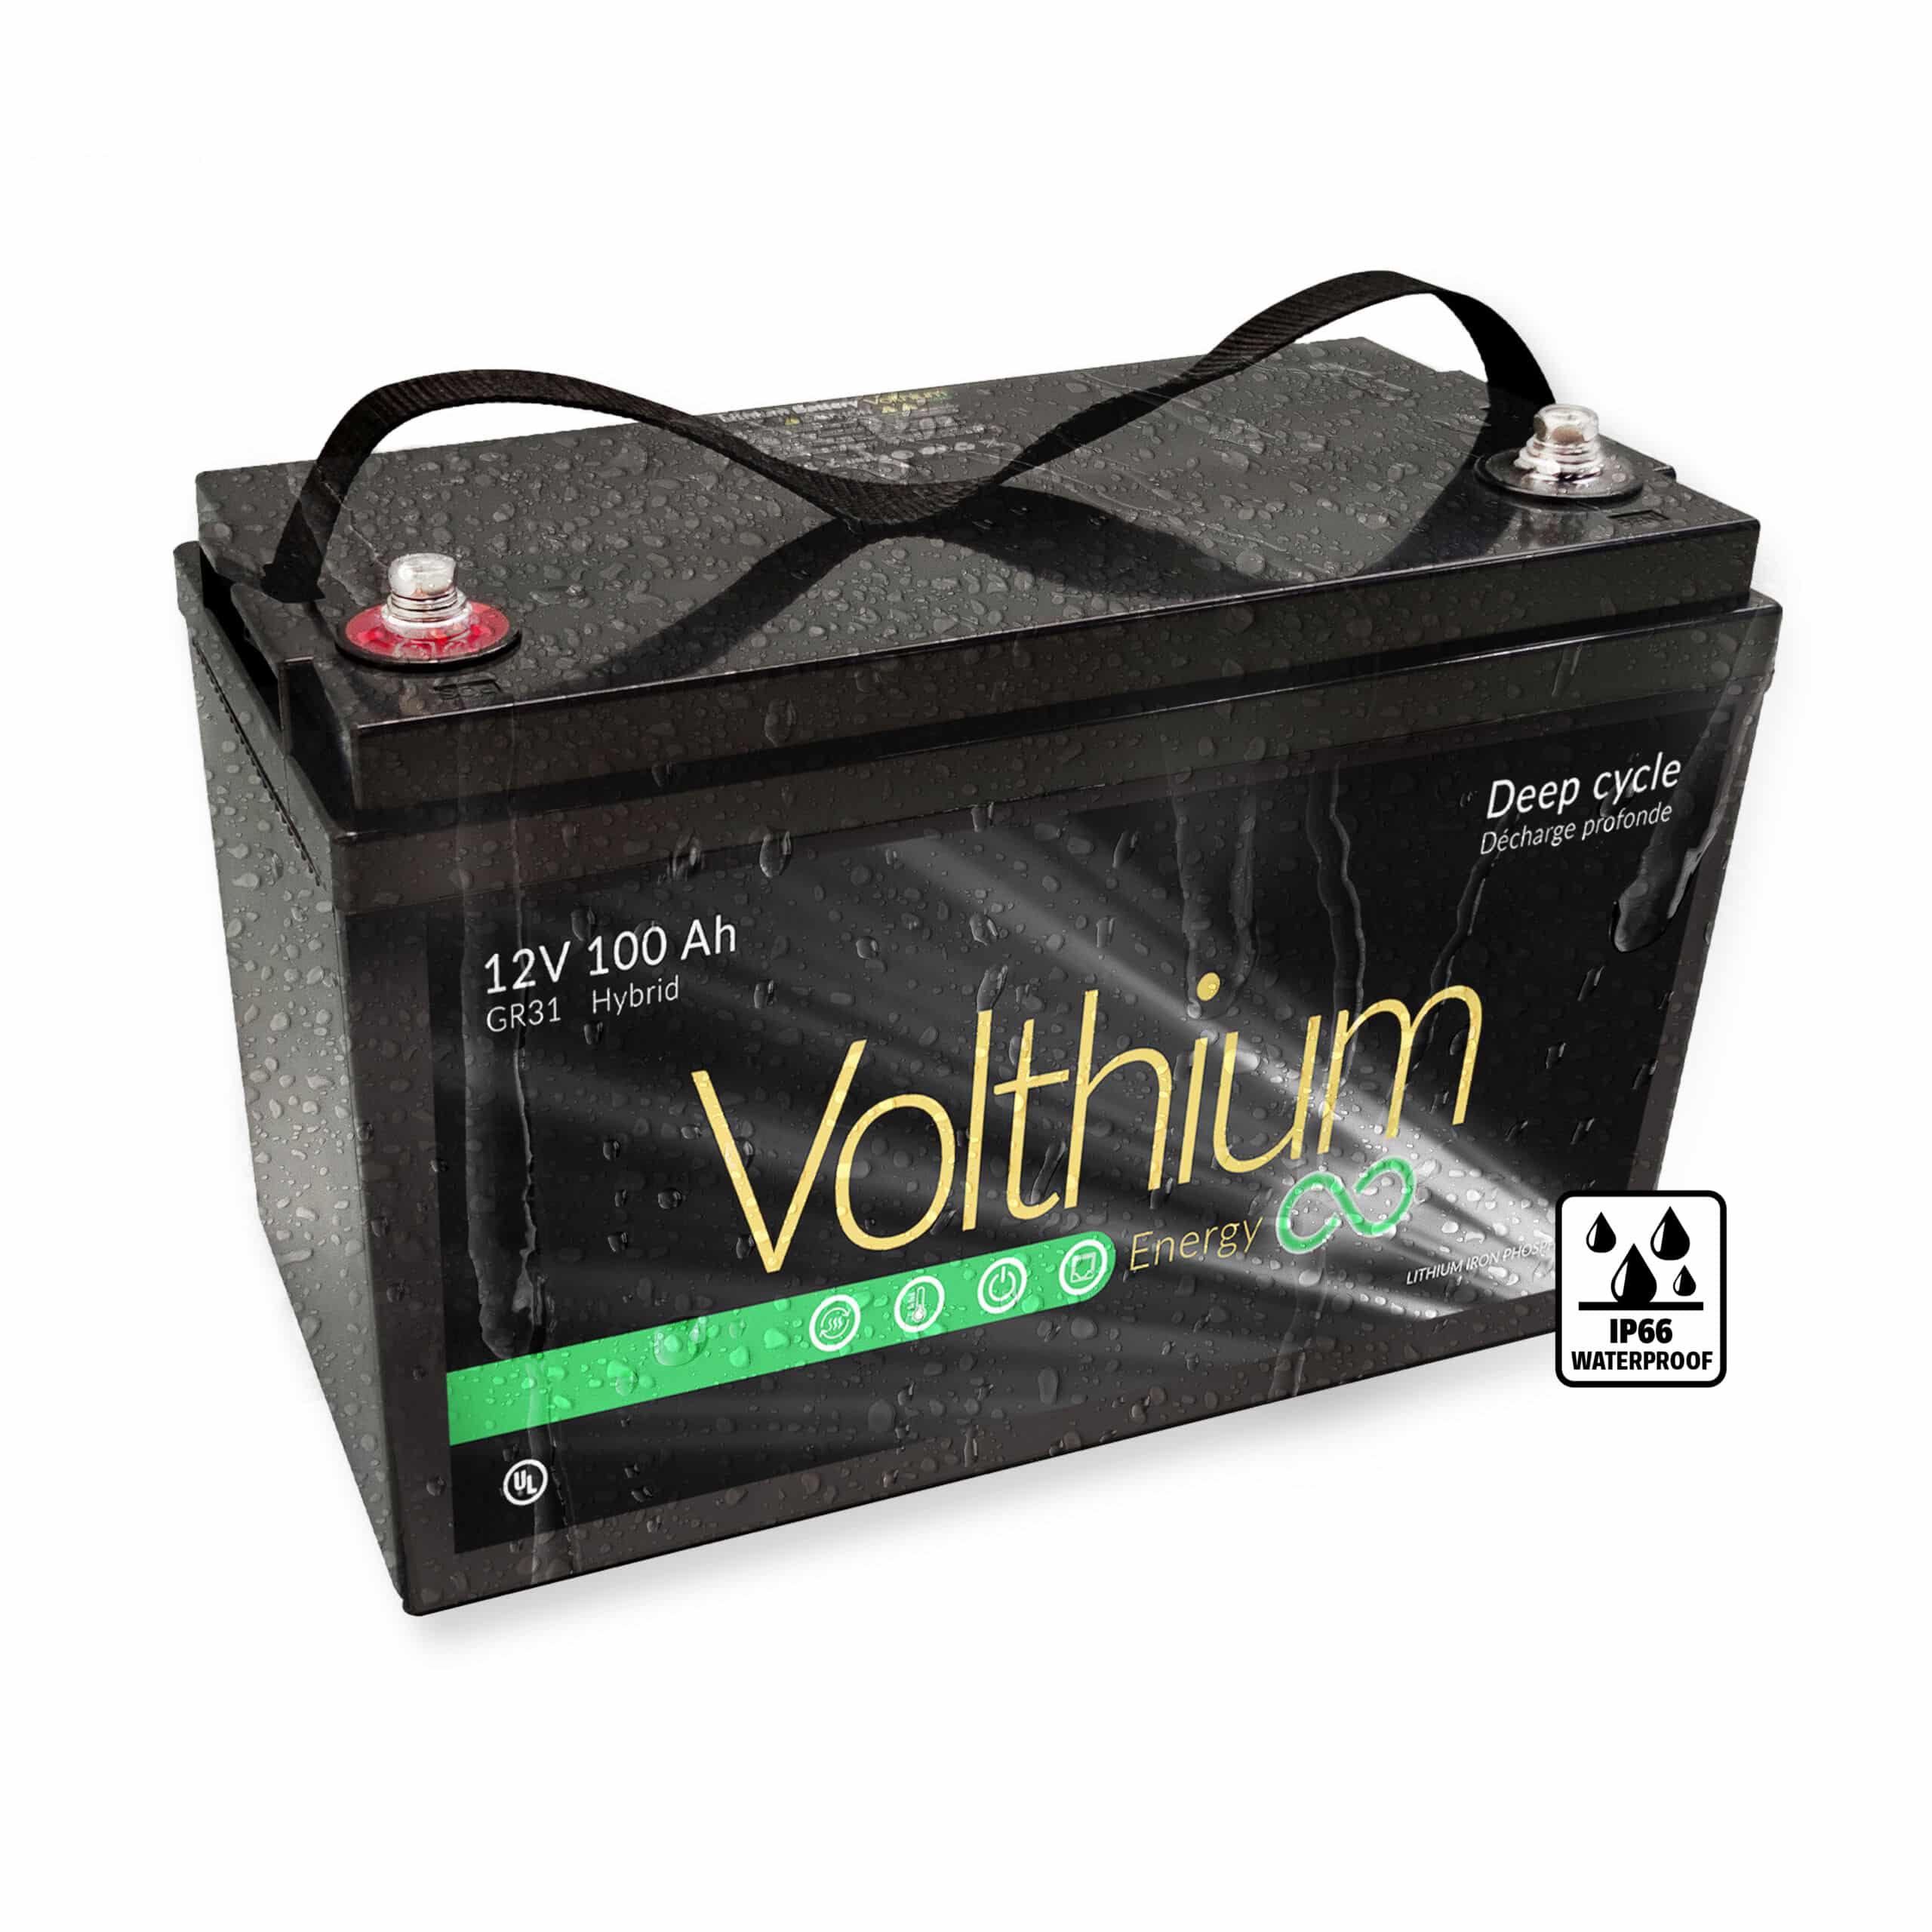 Batterie 12V 100AH Hybride - Démarrage / Décharge Profonde - Volthium